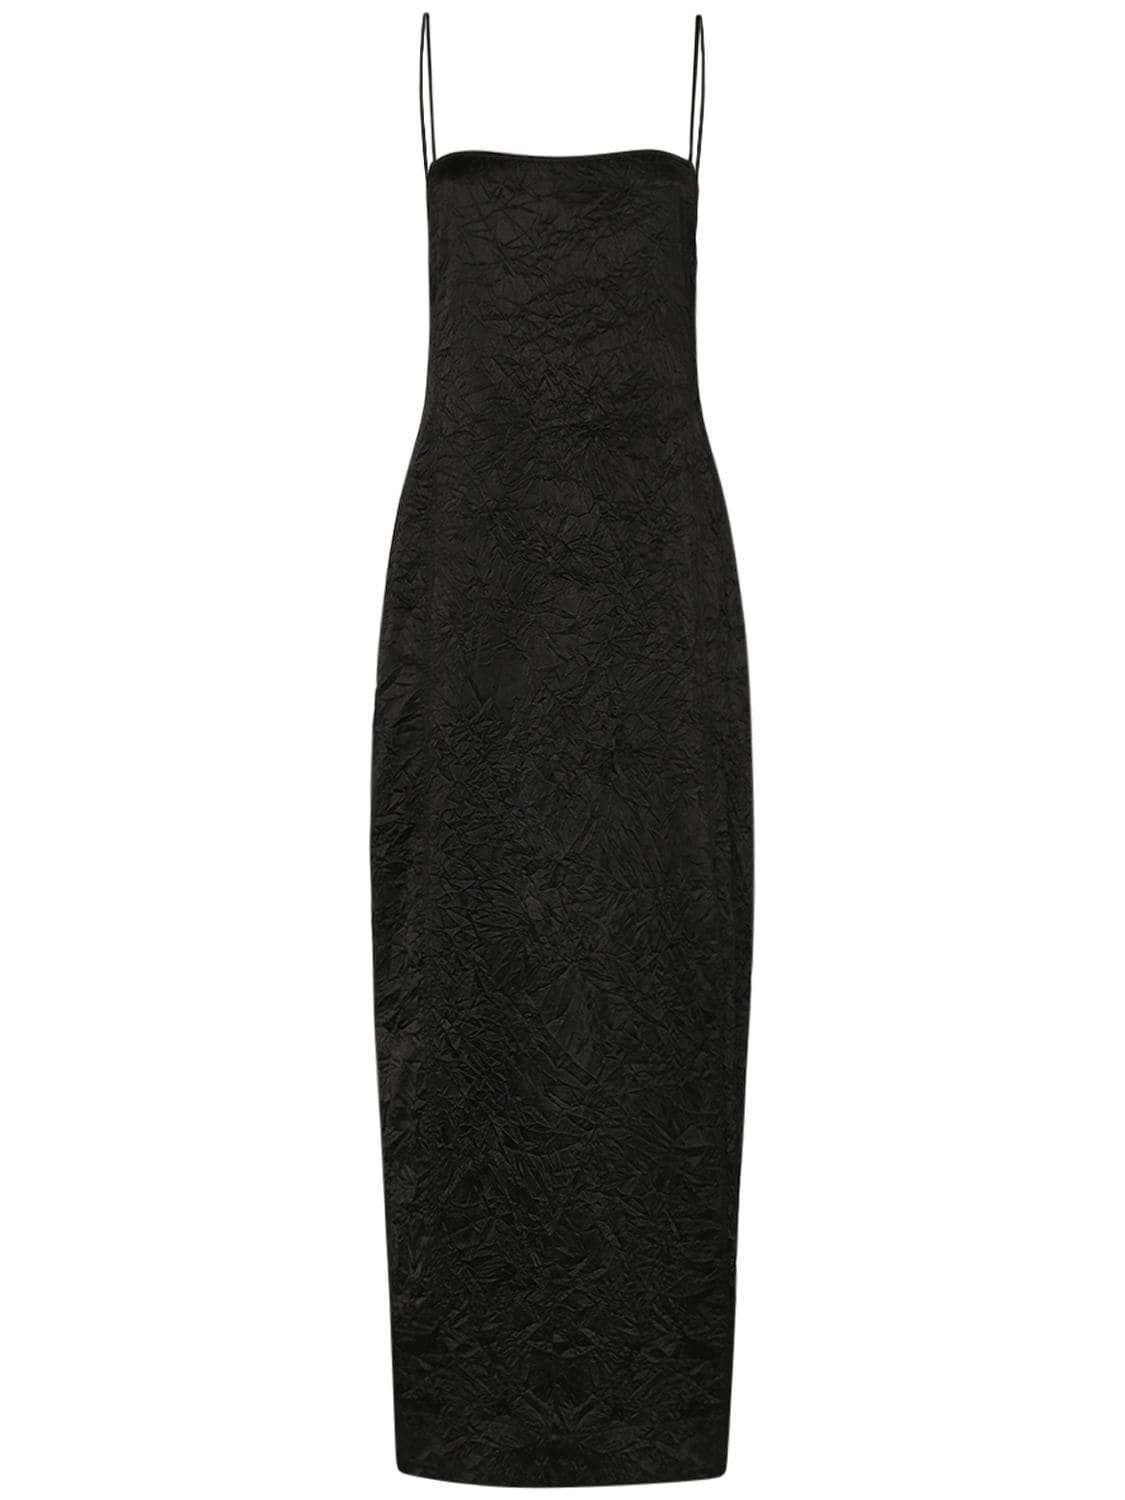 Image of Crinkled Satin Midi Slip Dress